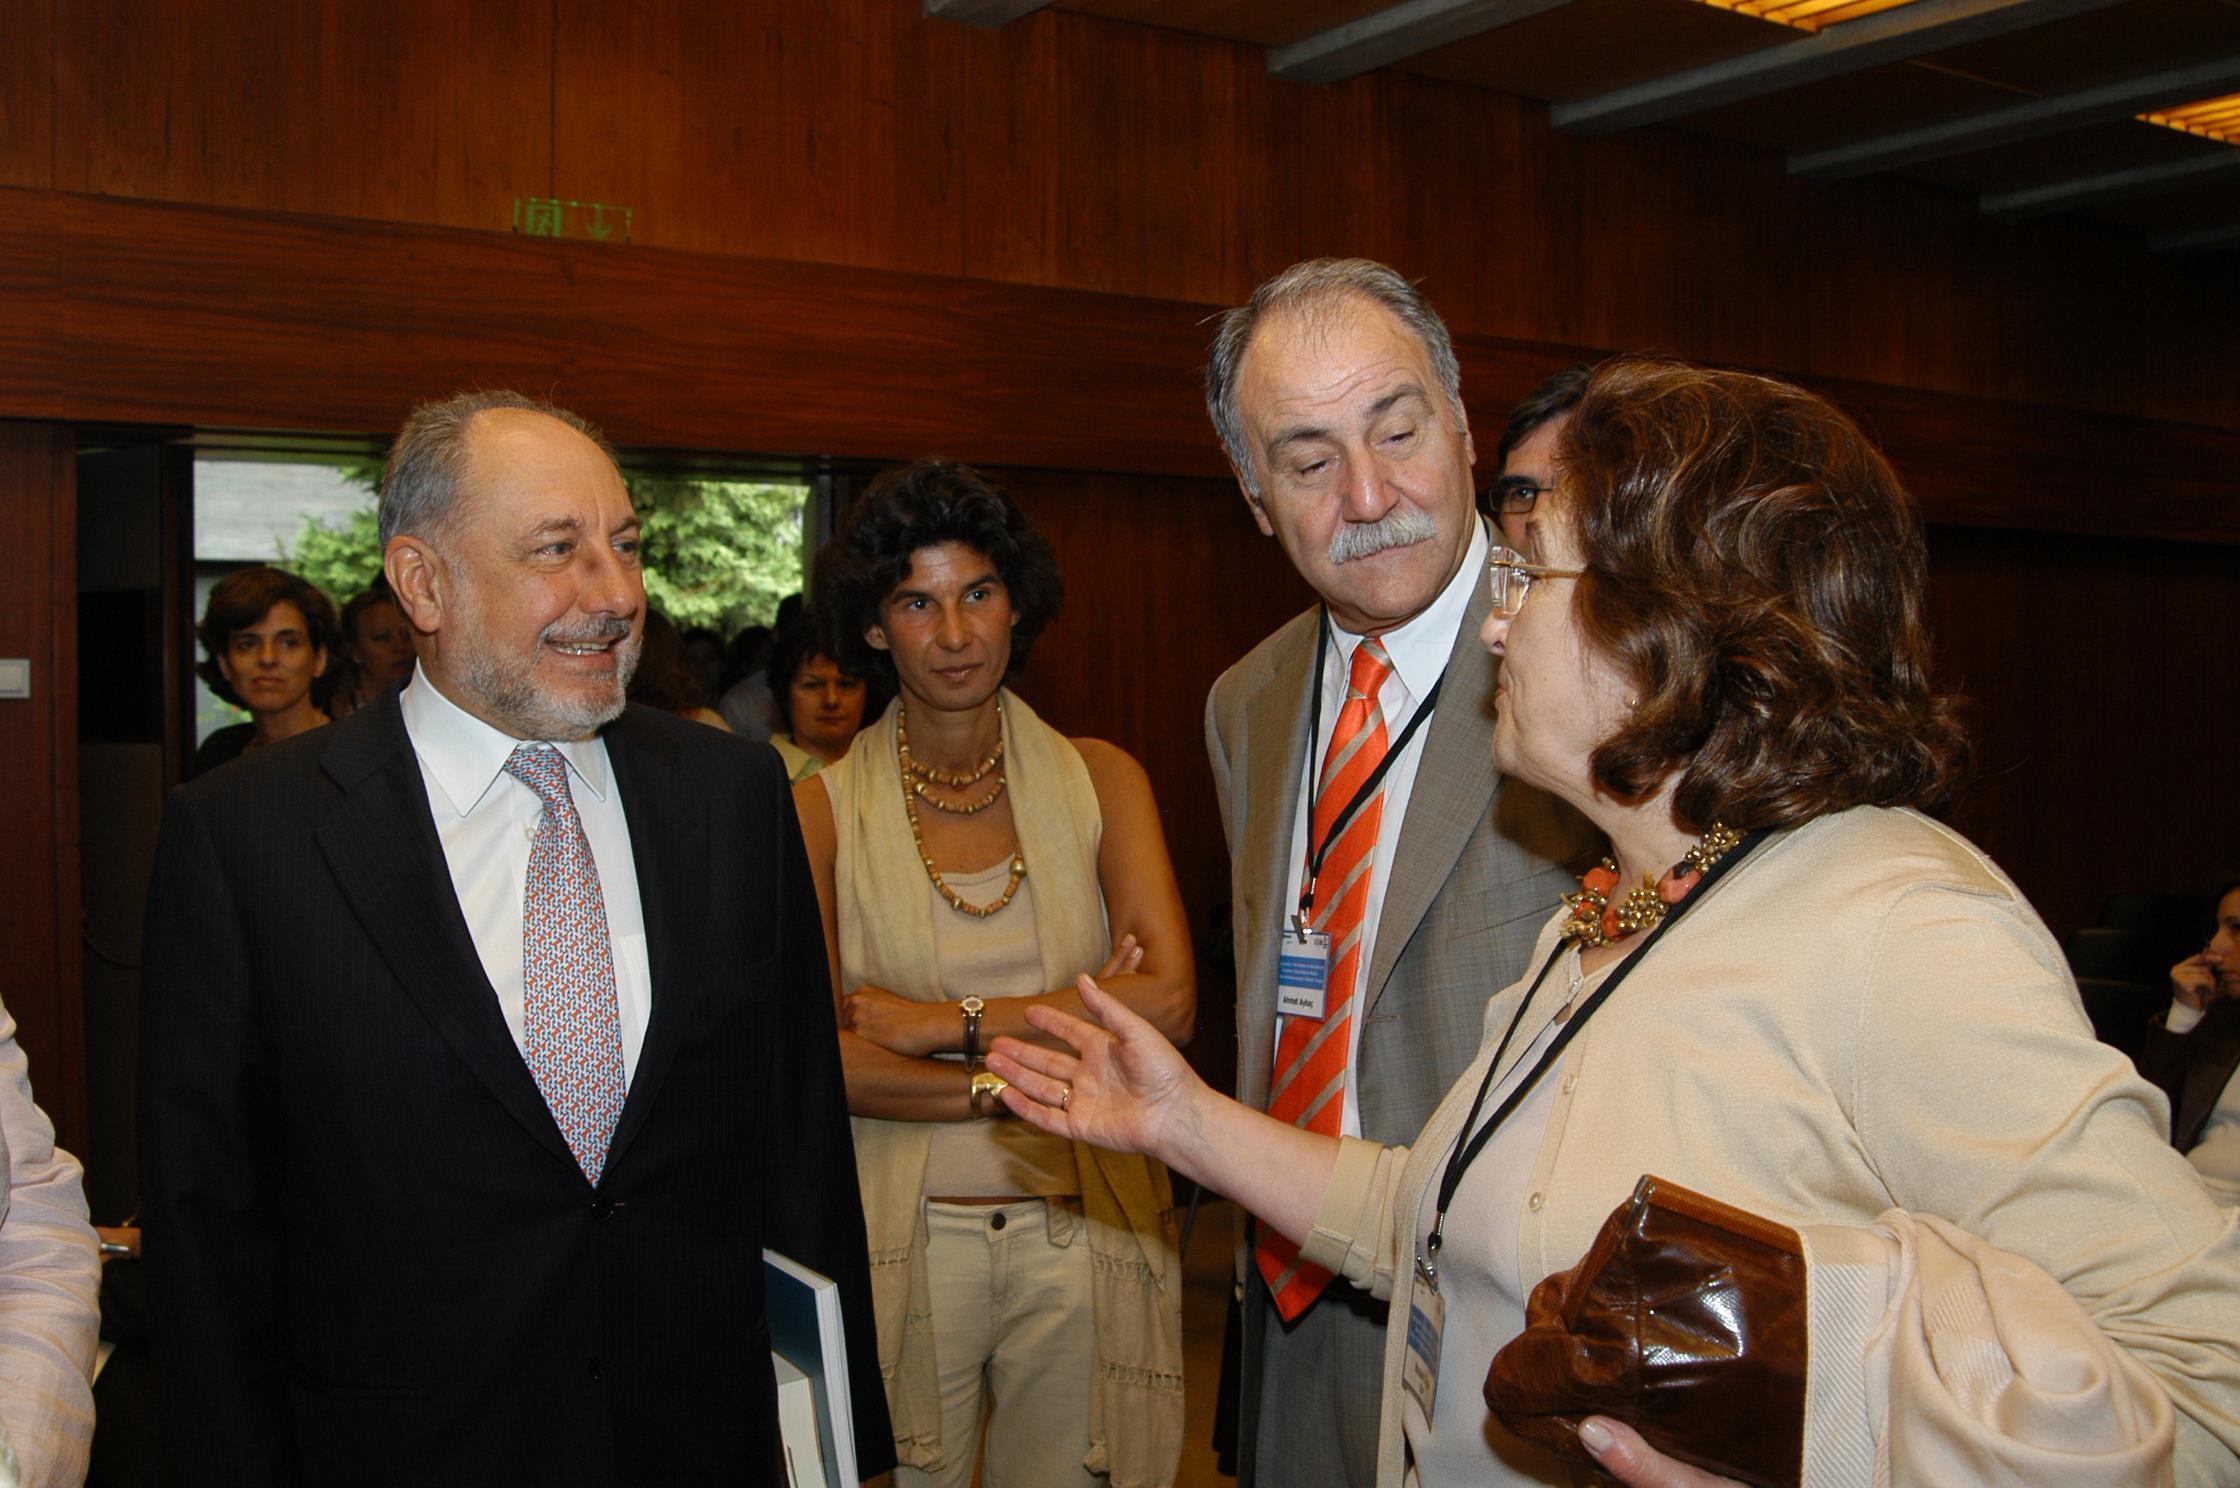 Conferência de imprensa. Emílio Rui Vilar (à esq.), Luísa Sampaio (atrás, ao centro) e Nazan Ölçer (à dir.)